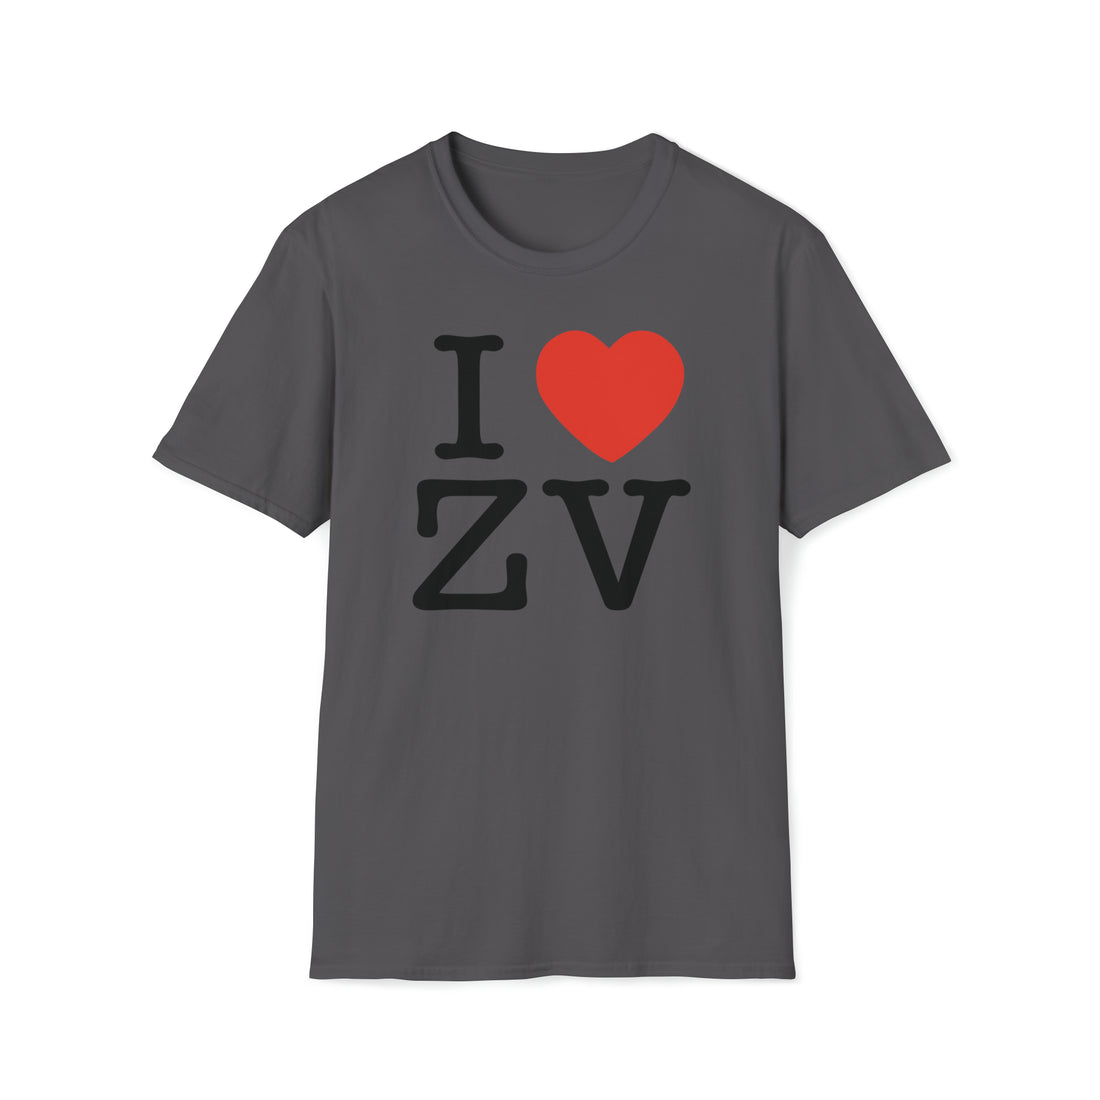 ZV I 3 NY T-Shirt - THE ZEN VIKING